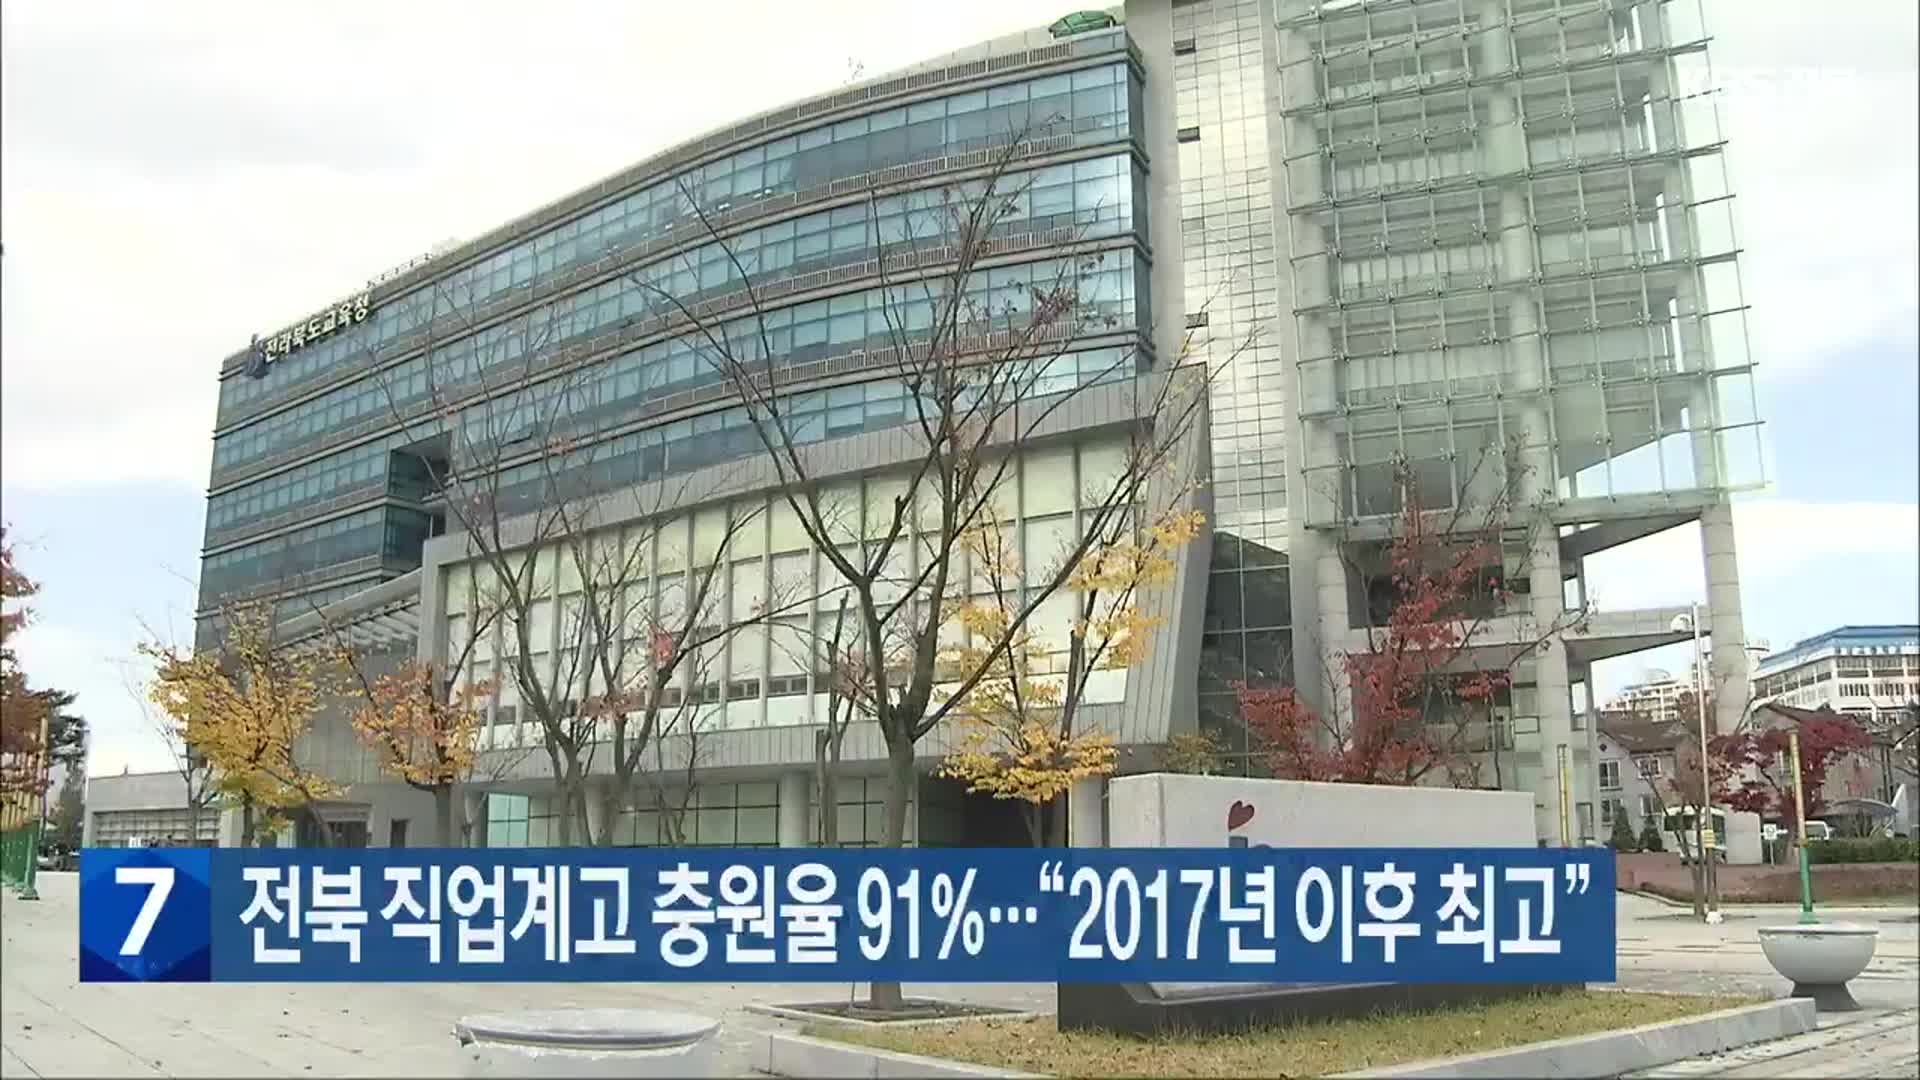 전북 직업계고 충원율 91%…“2017년 이후 최고”